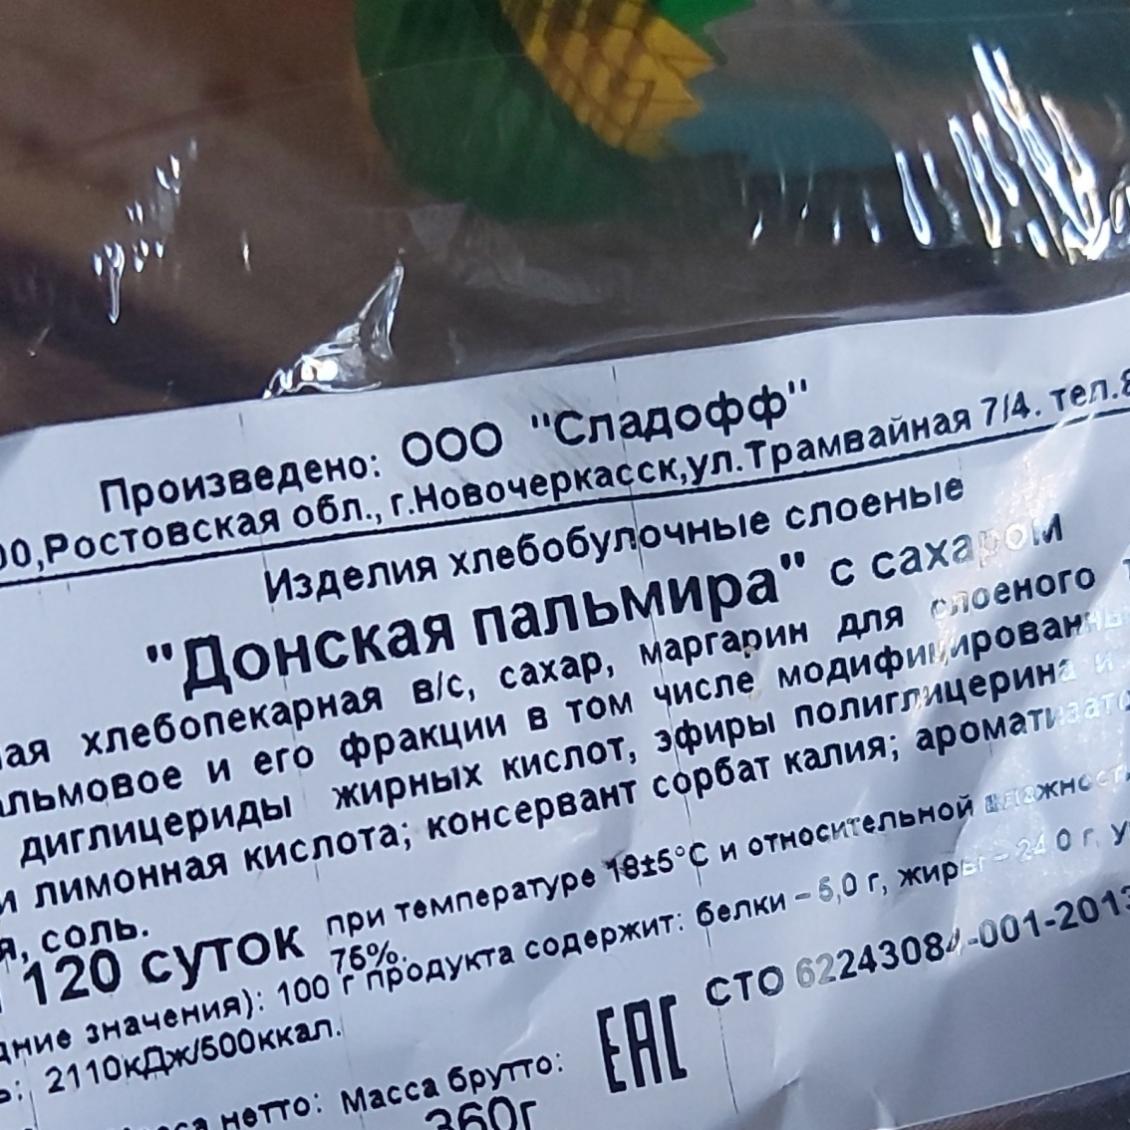 Фото - печенье Донская пальмира с сахаром Сладофф